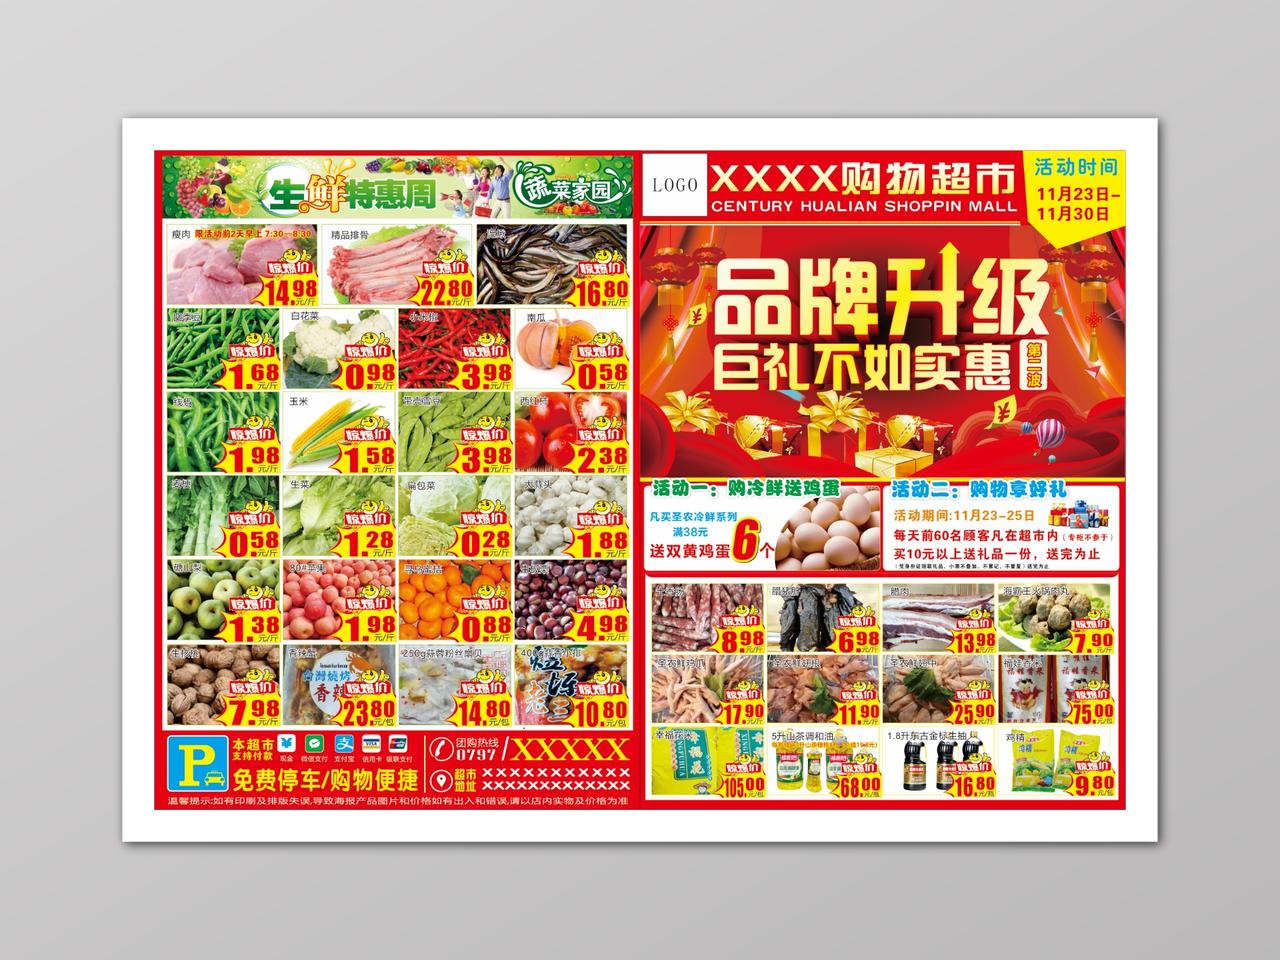 品牌升级超市促销多款产品活动海报